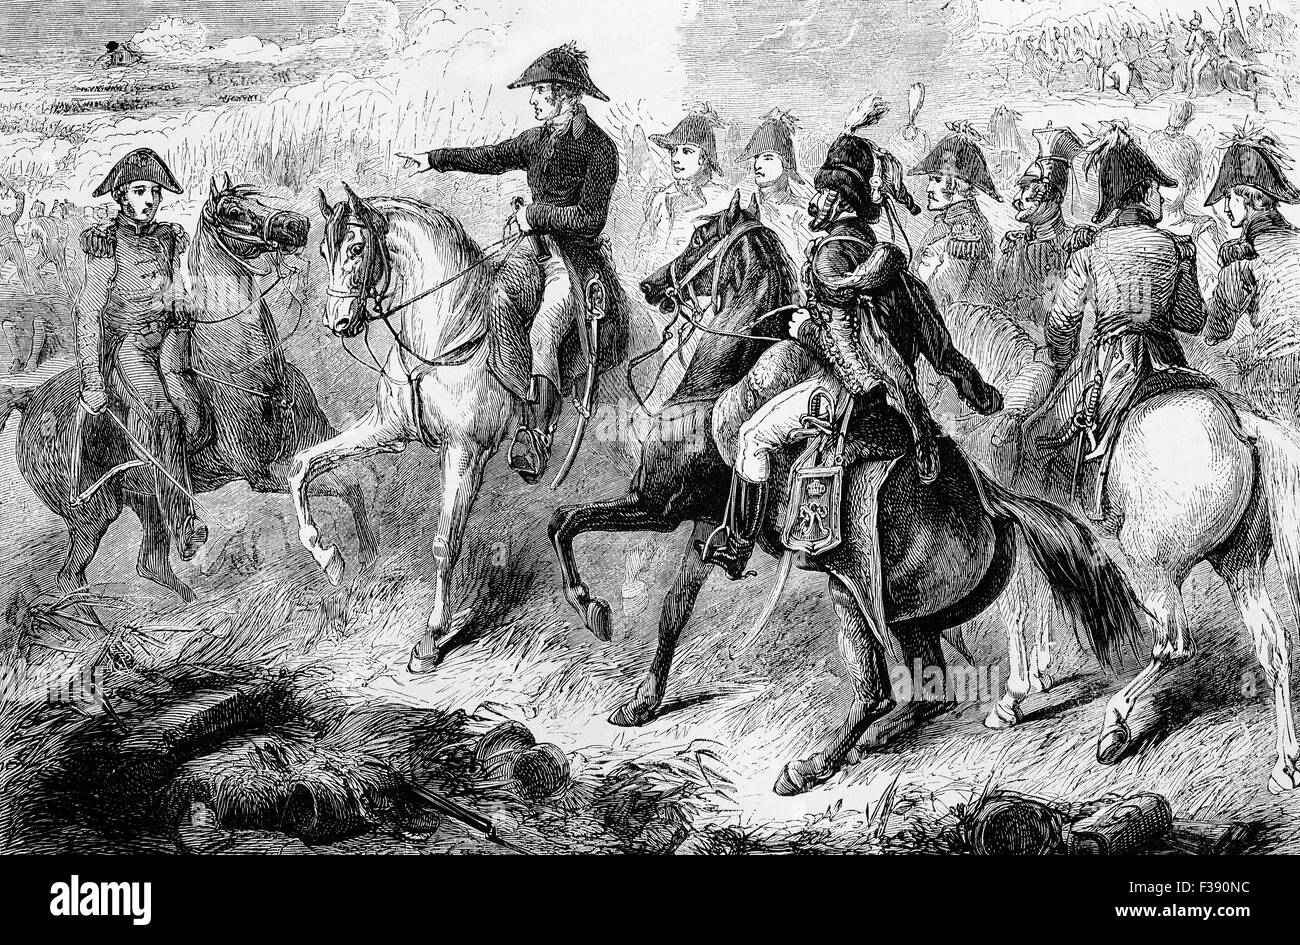 Le duc de Wellington pendant la bataille de Waterloo. La bataille a eu lieu le dimanche 18 juin 1815 près de Waterloo, dans l'actuelle Belgique, lorsque l'armée française sous le commandement de Napoléon Bonaparte a été rejeté par deux des armées de la septième Coalition : une armée alliée anglo-mené sous le commandement du duc de Wellington, et une armée prussienne sous le commandement de Gebhard Leberecht von Blücher, Prince de Wahlstatt. Banque D'Images